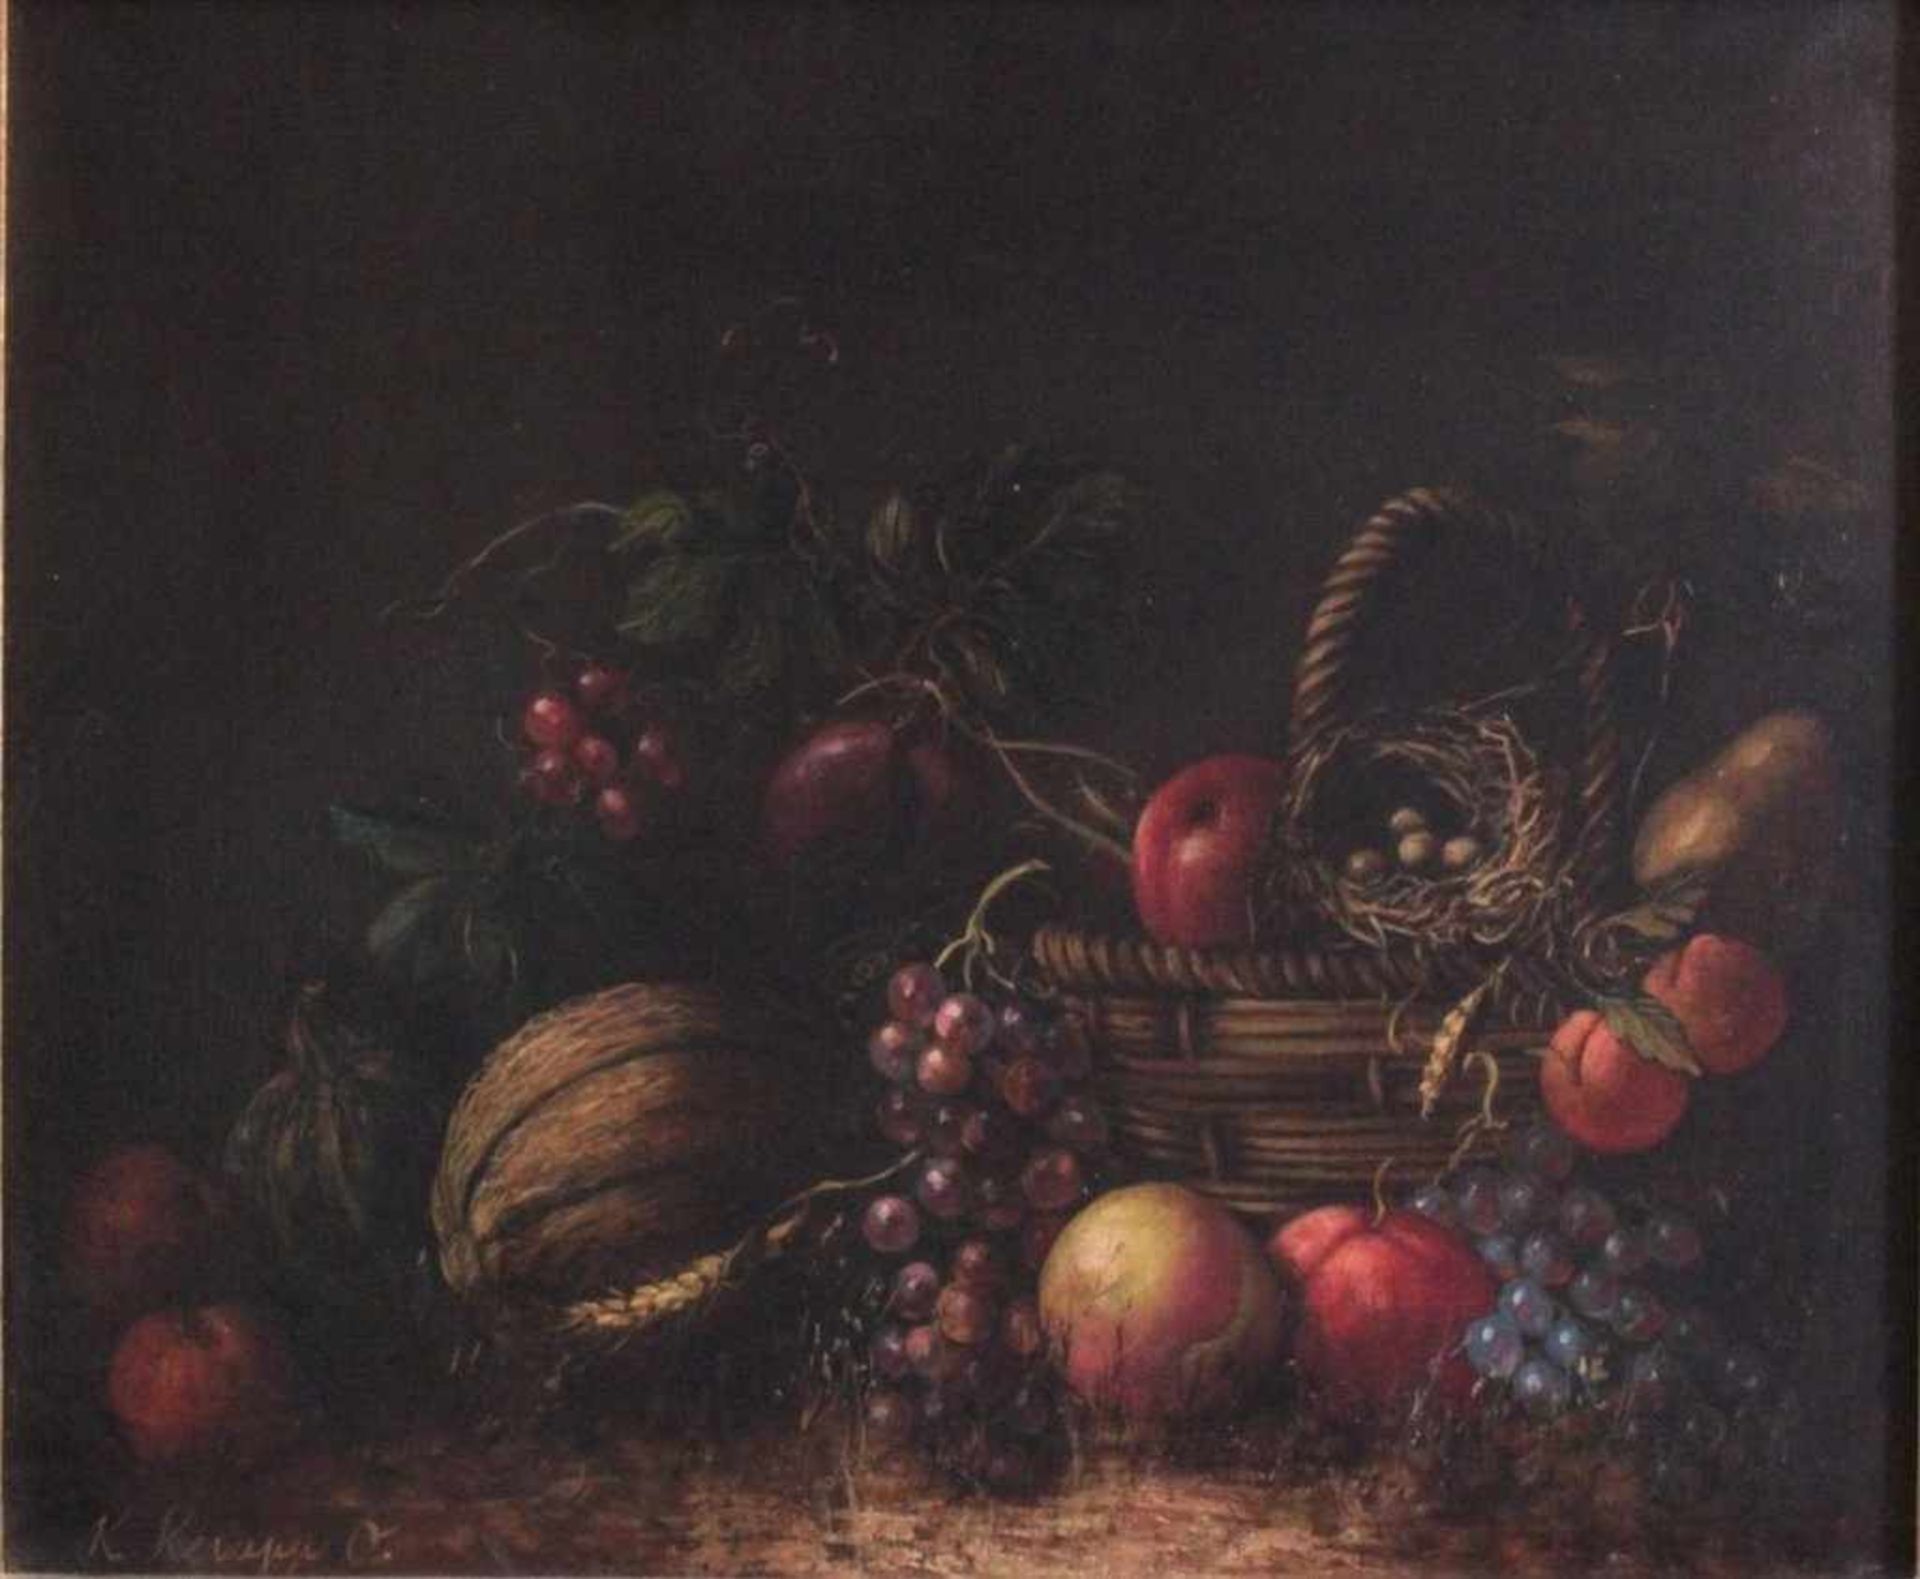 Stillleben mit Obst, 19. Jh., Konrad Knapp 1864-?Öl auf Leinwand gemalt, gerahmt, ca. 492 x 58 cm. - Bild 2 aus 5